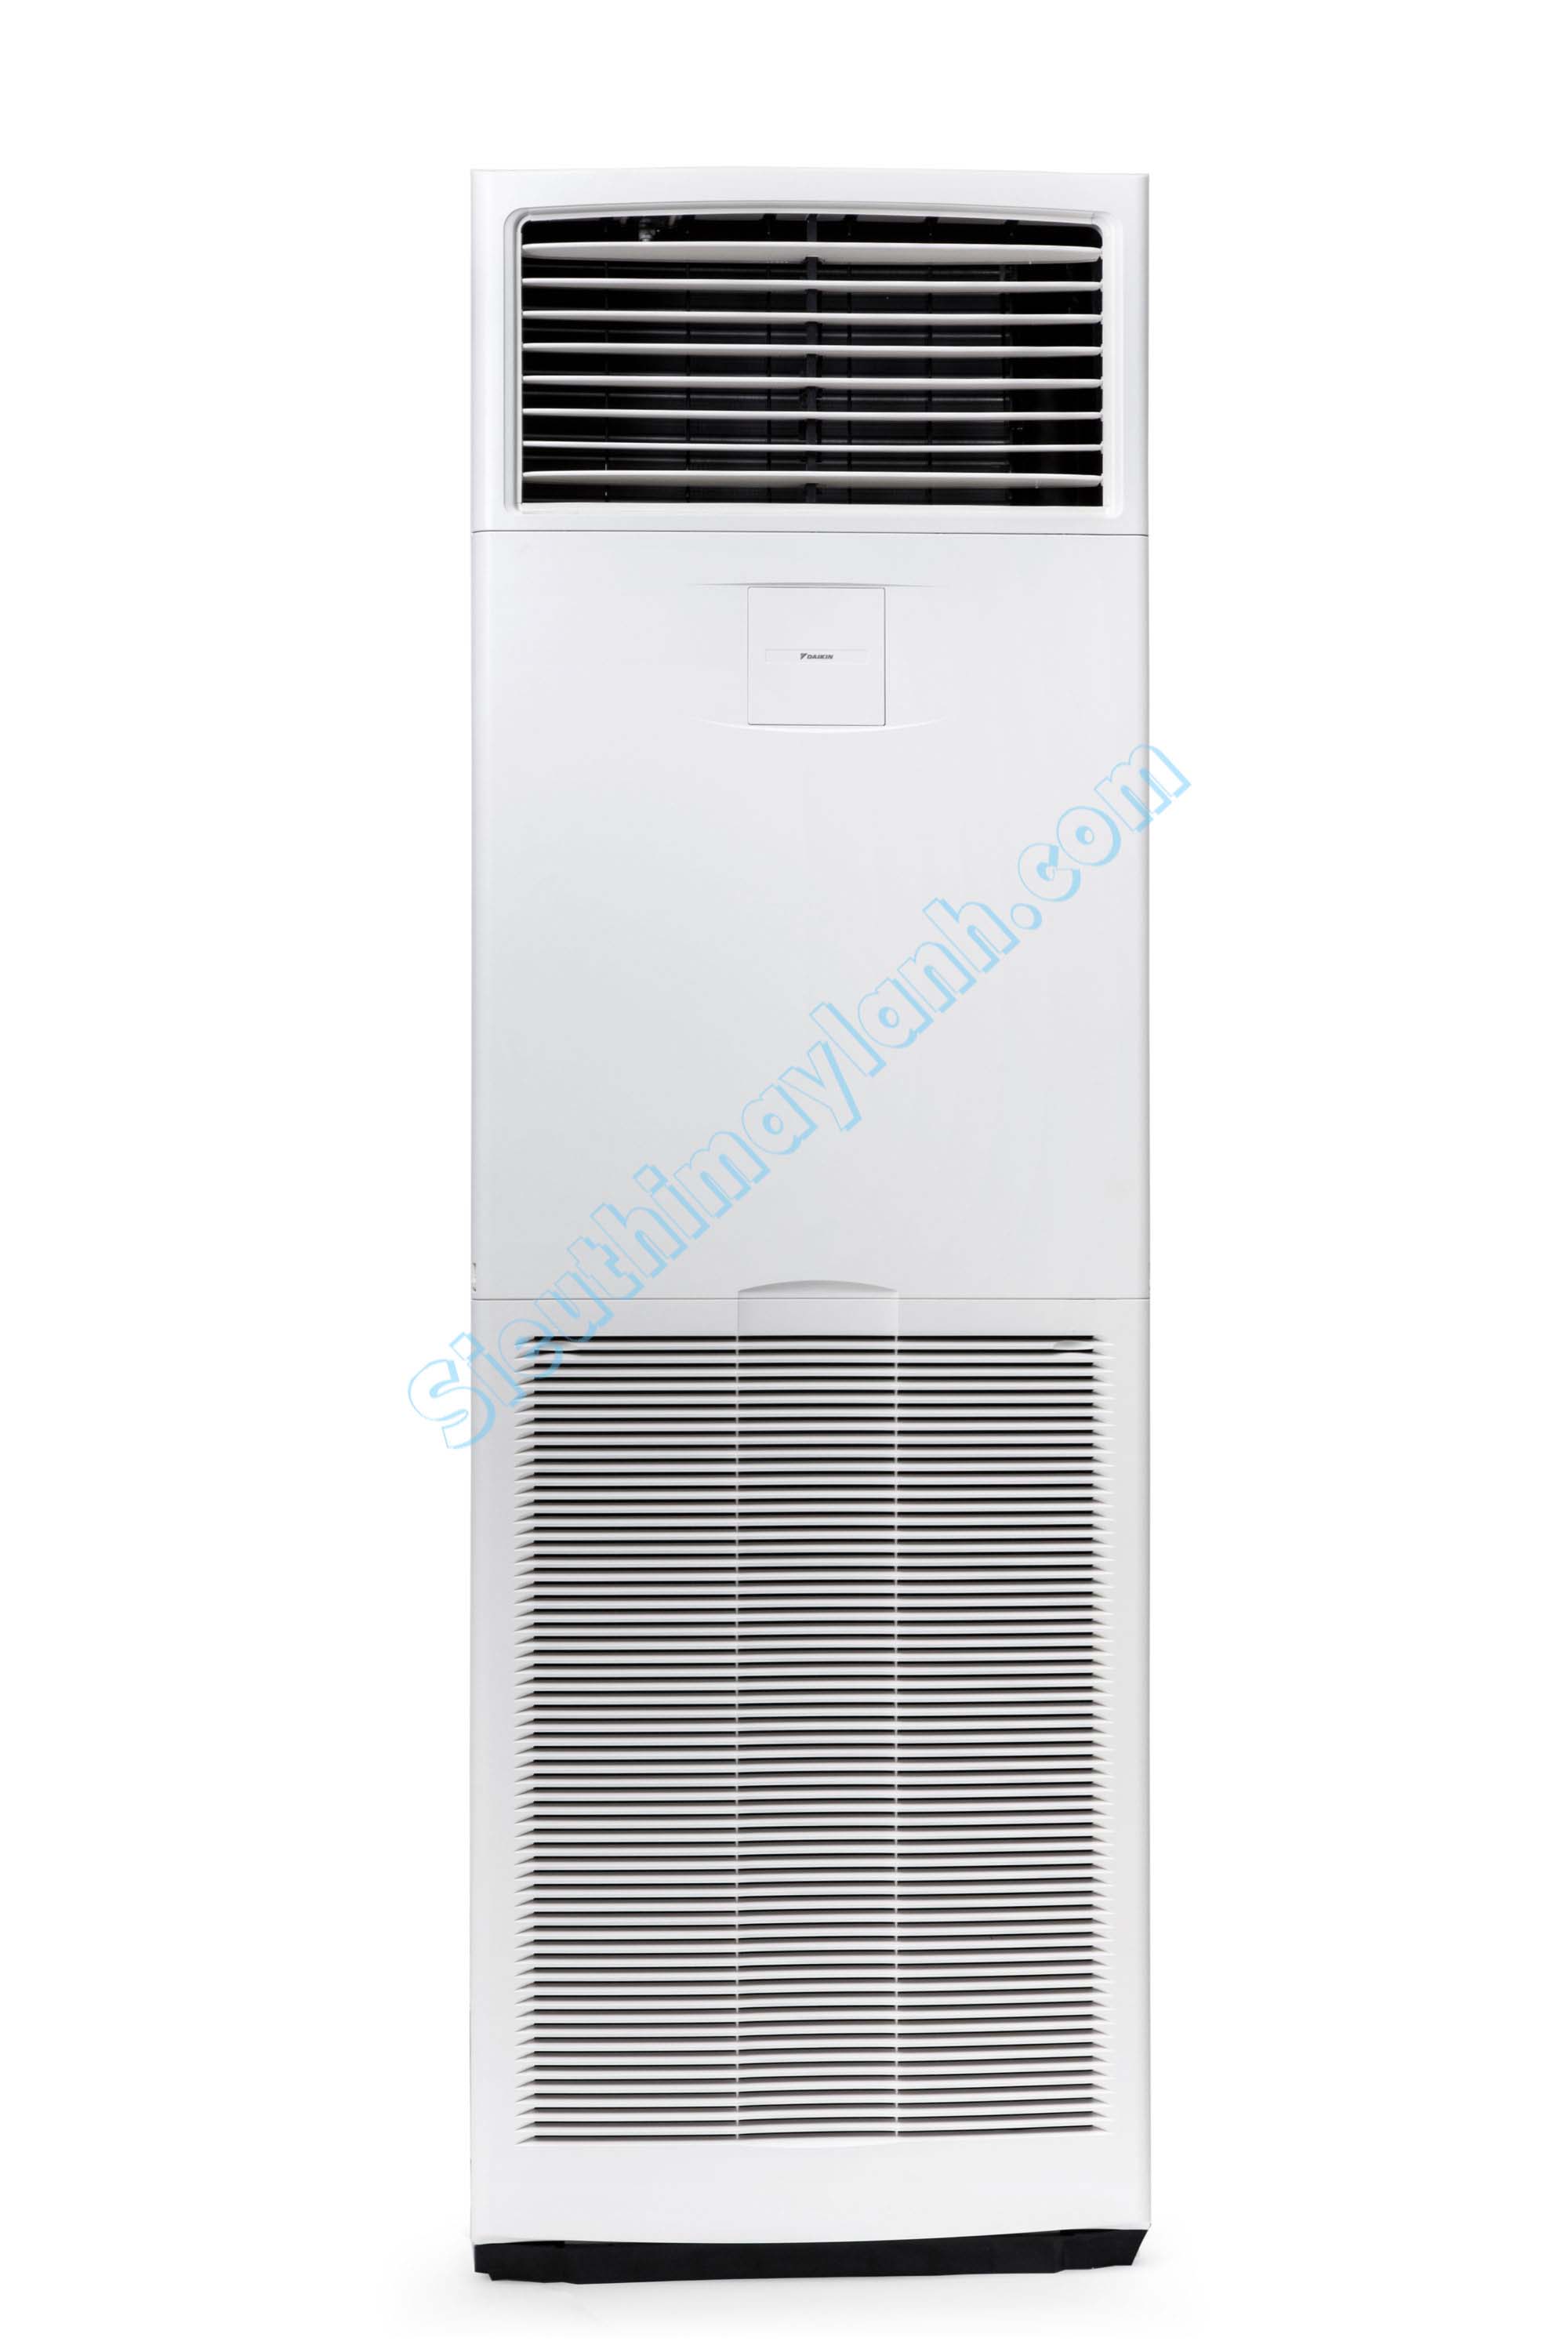 Máy lạnh tủ đứng Daikin FVA71AMVM Inverter (3.0Hp) - 1 pha